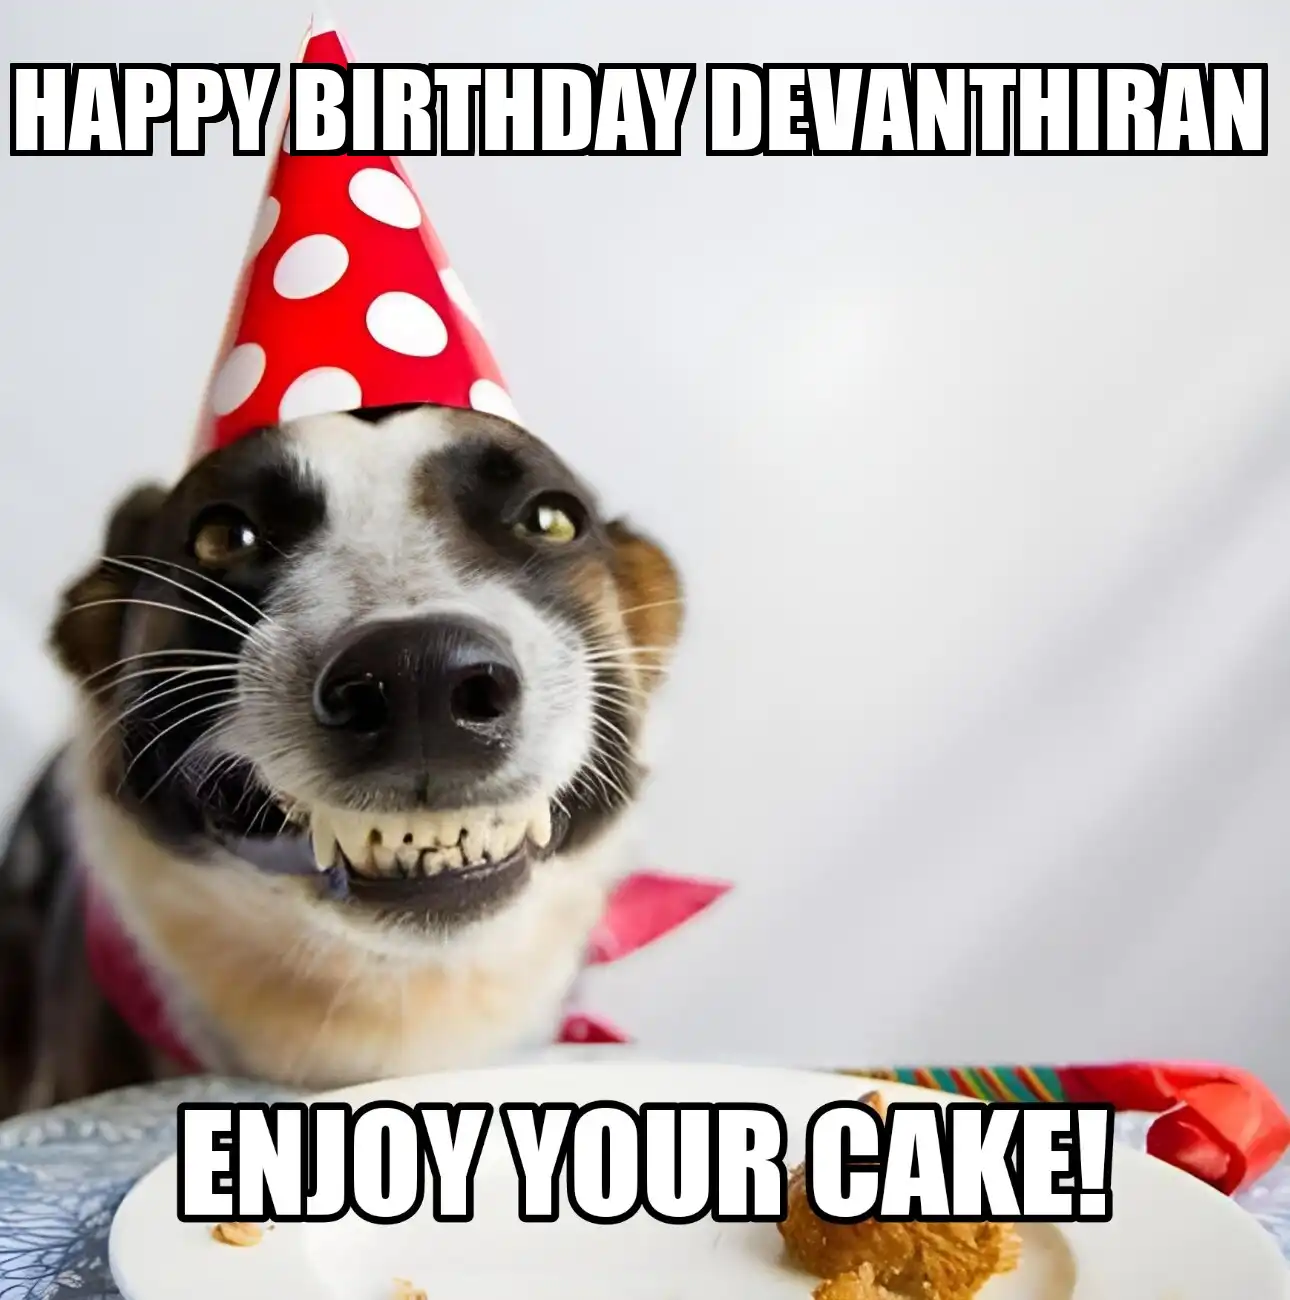 Happy Birthday Devanthiran Enjoy Your Cake Dog Meme